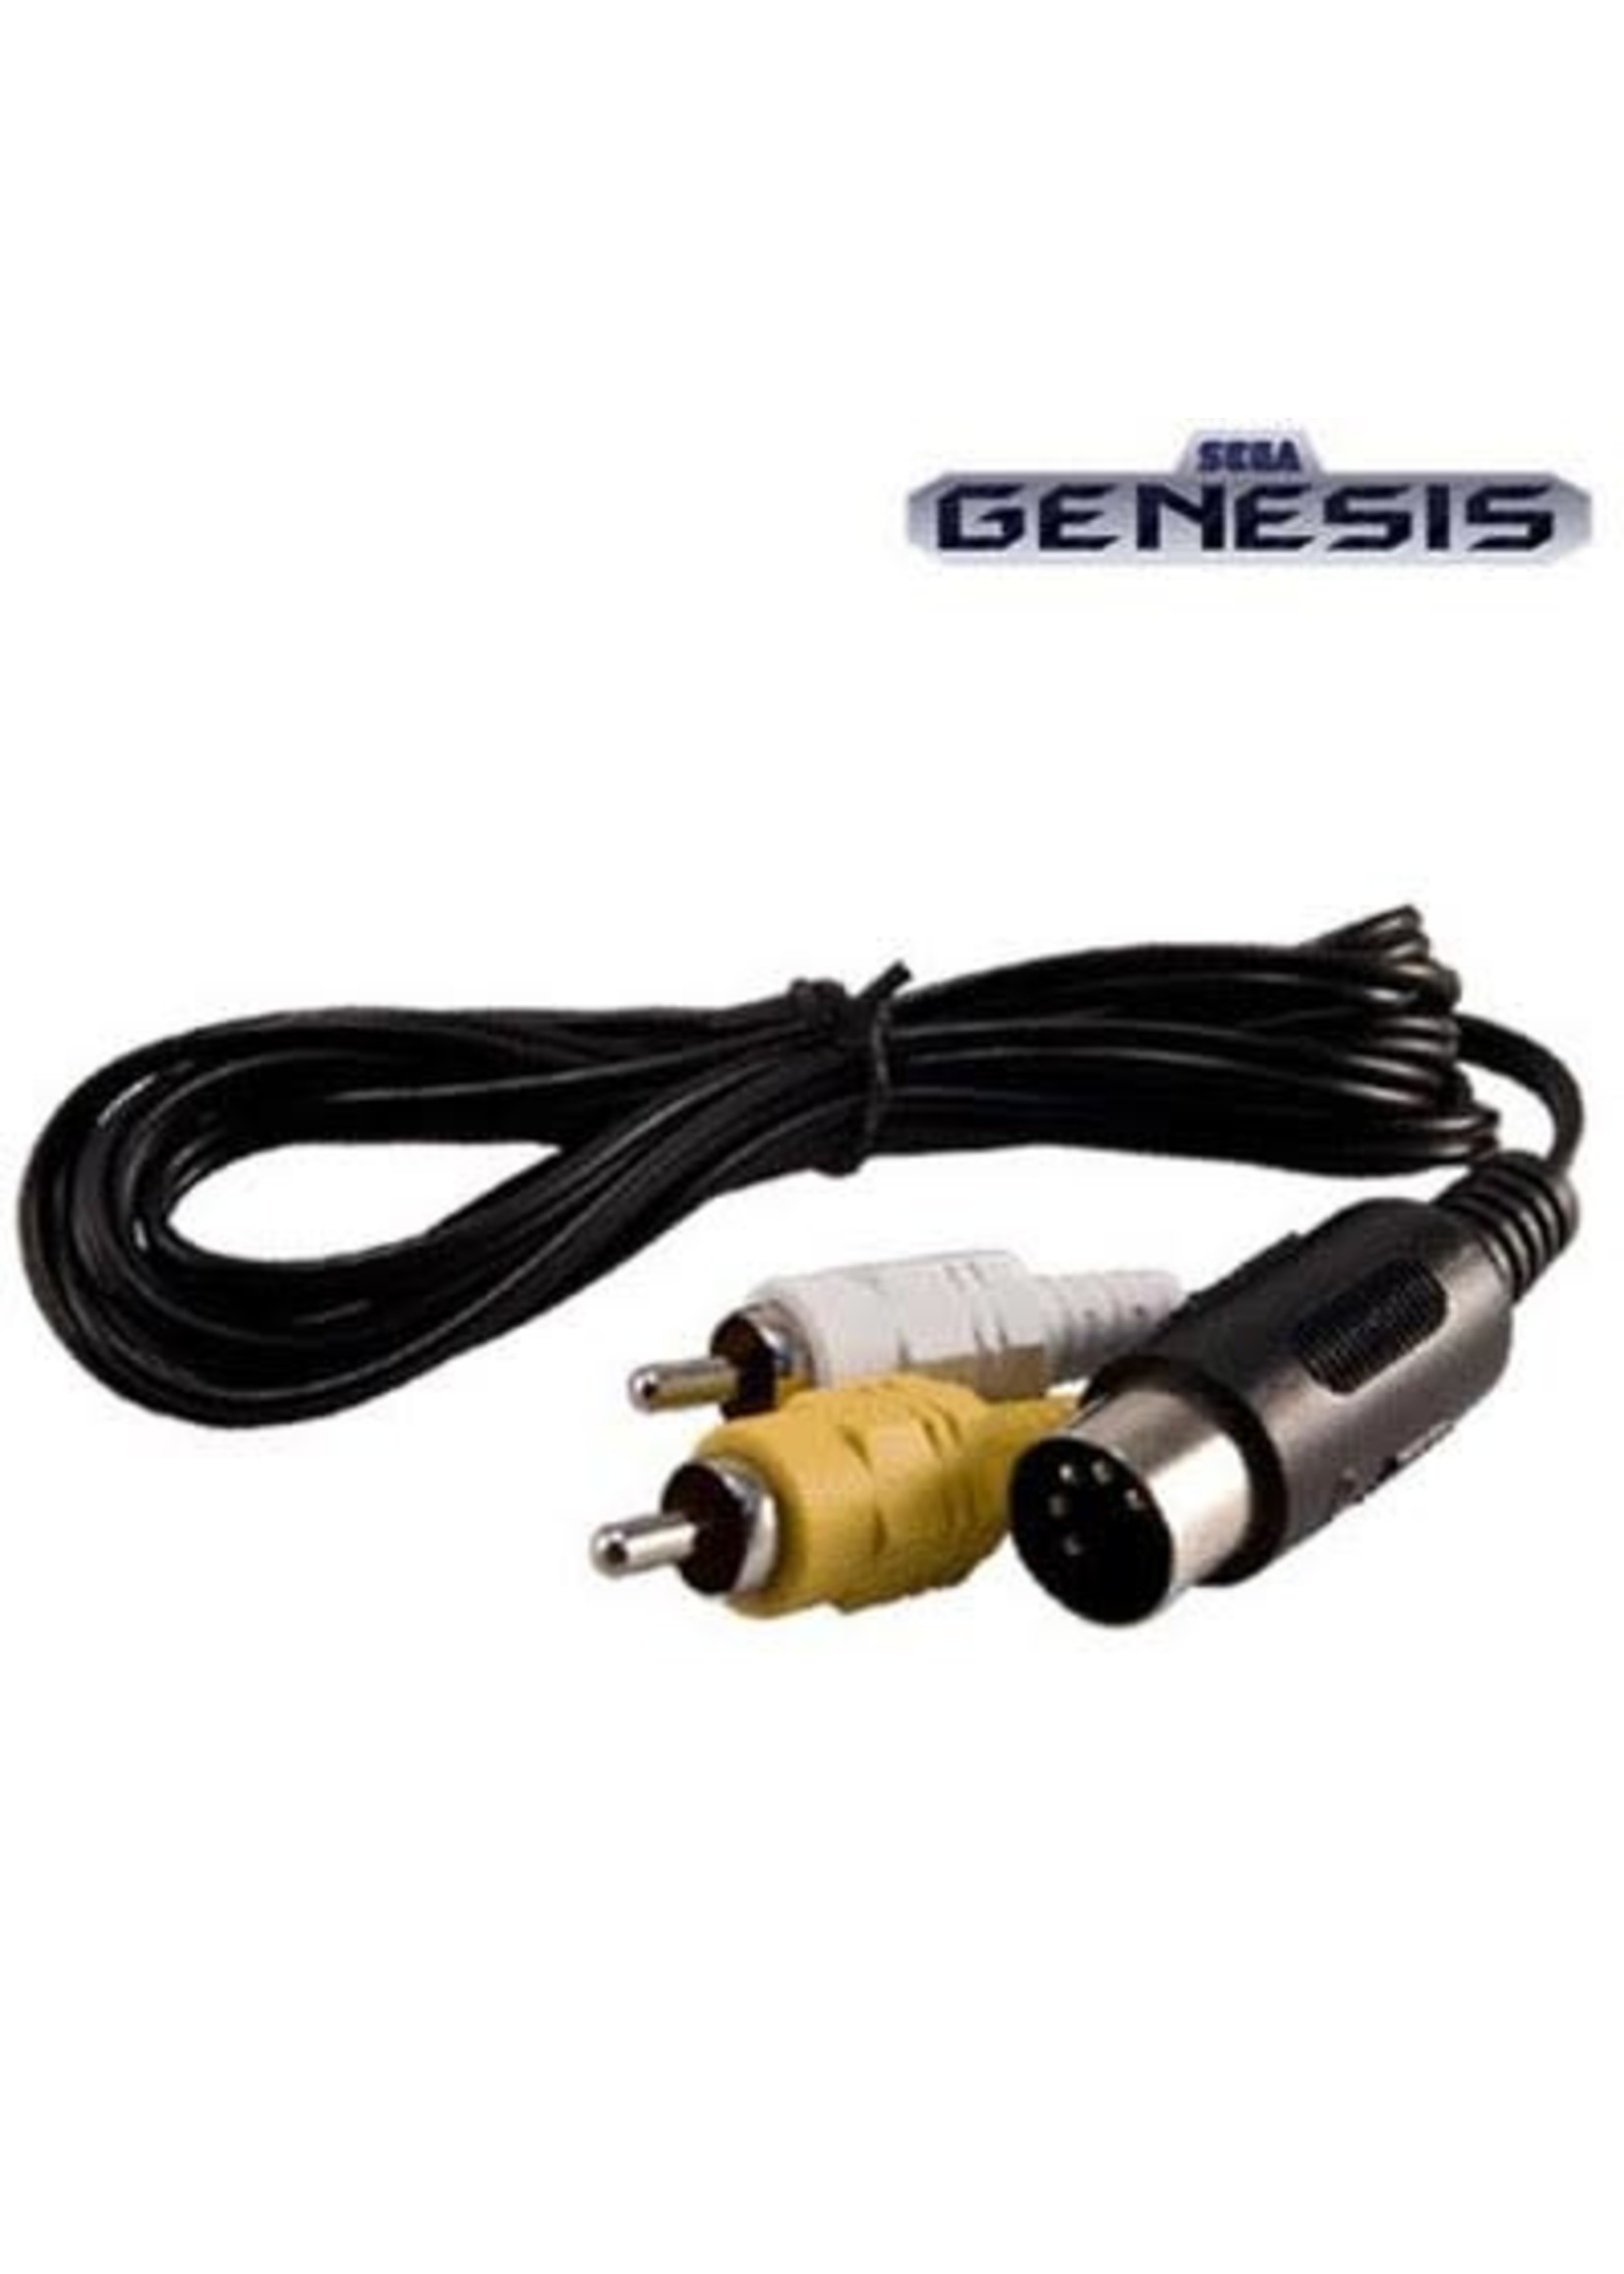 Sega Genesis Genesis AV Cable 1st Gen (Used)